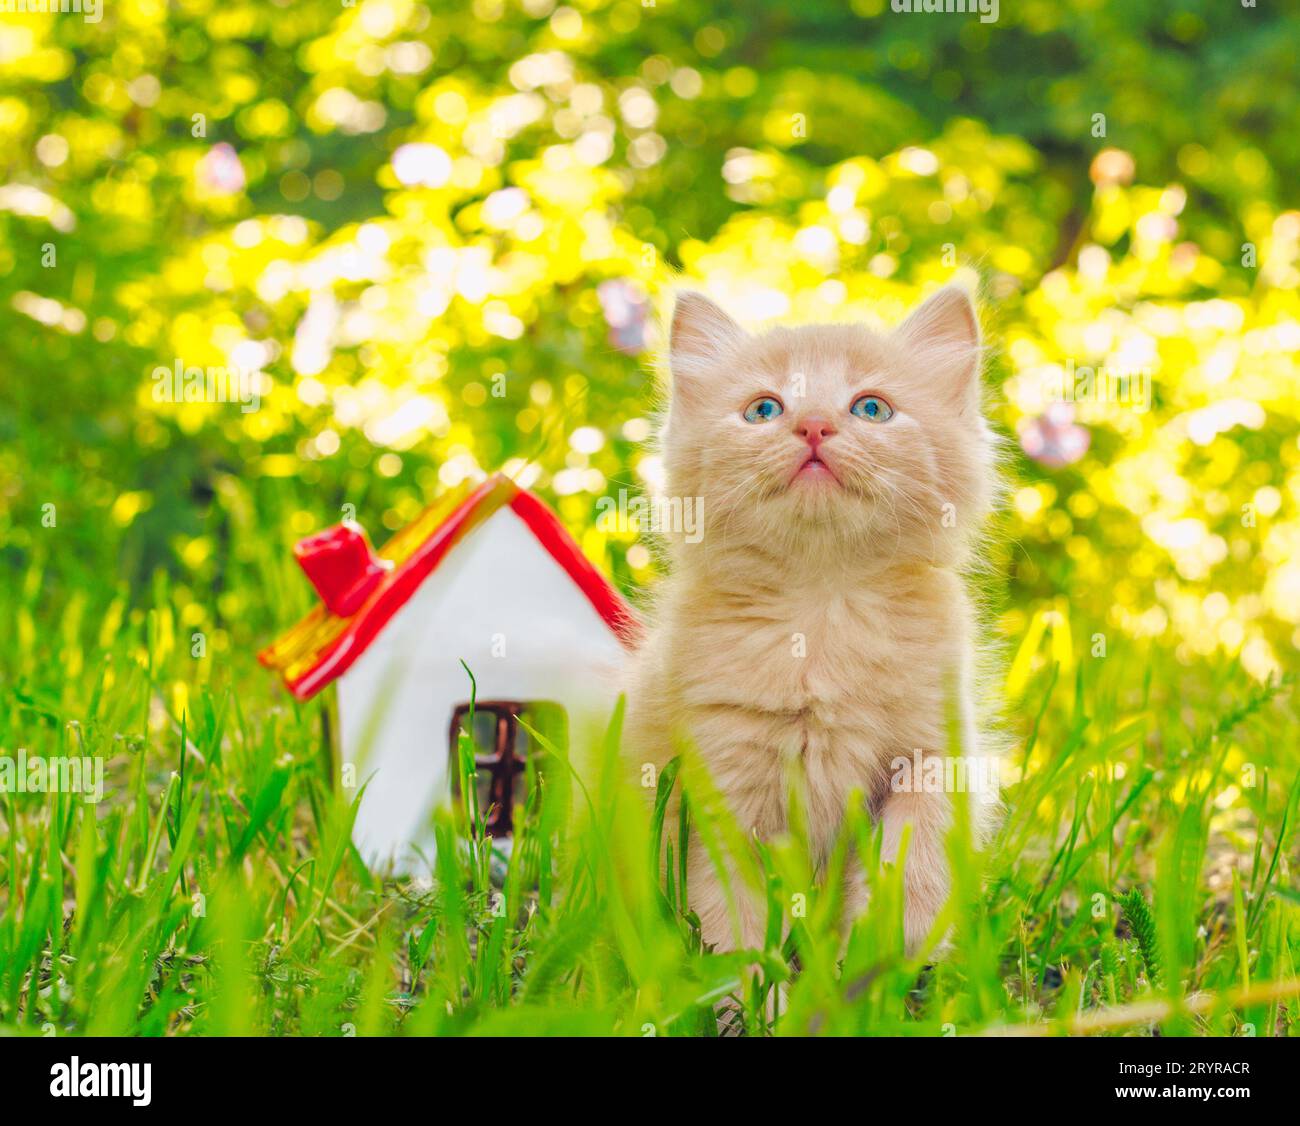 Gattino rosso scintillante nell'erba verde accanto alla casa dei giocattoli Foto Stock